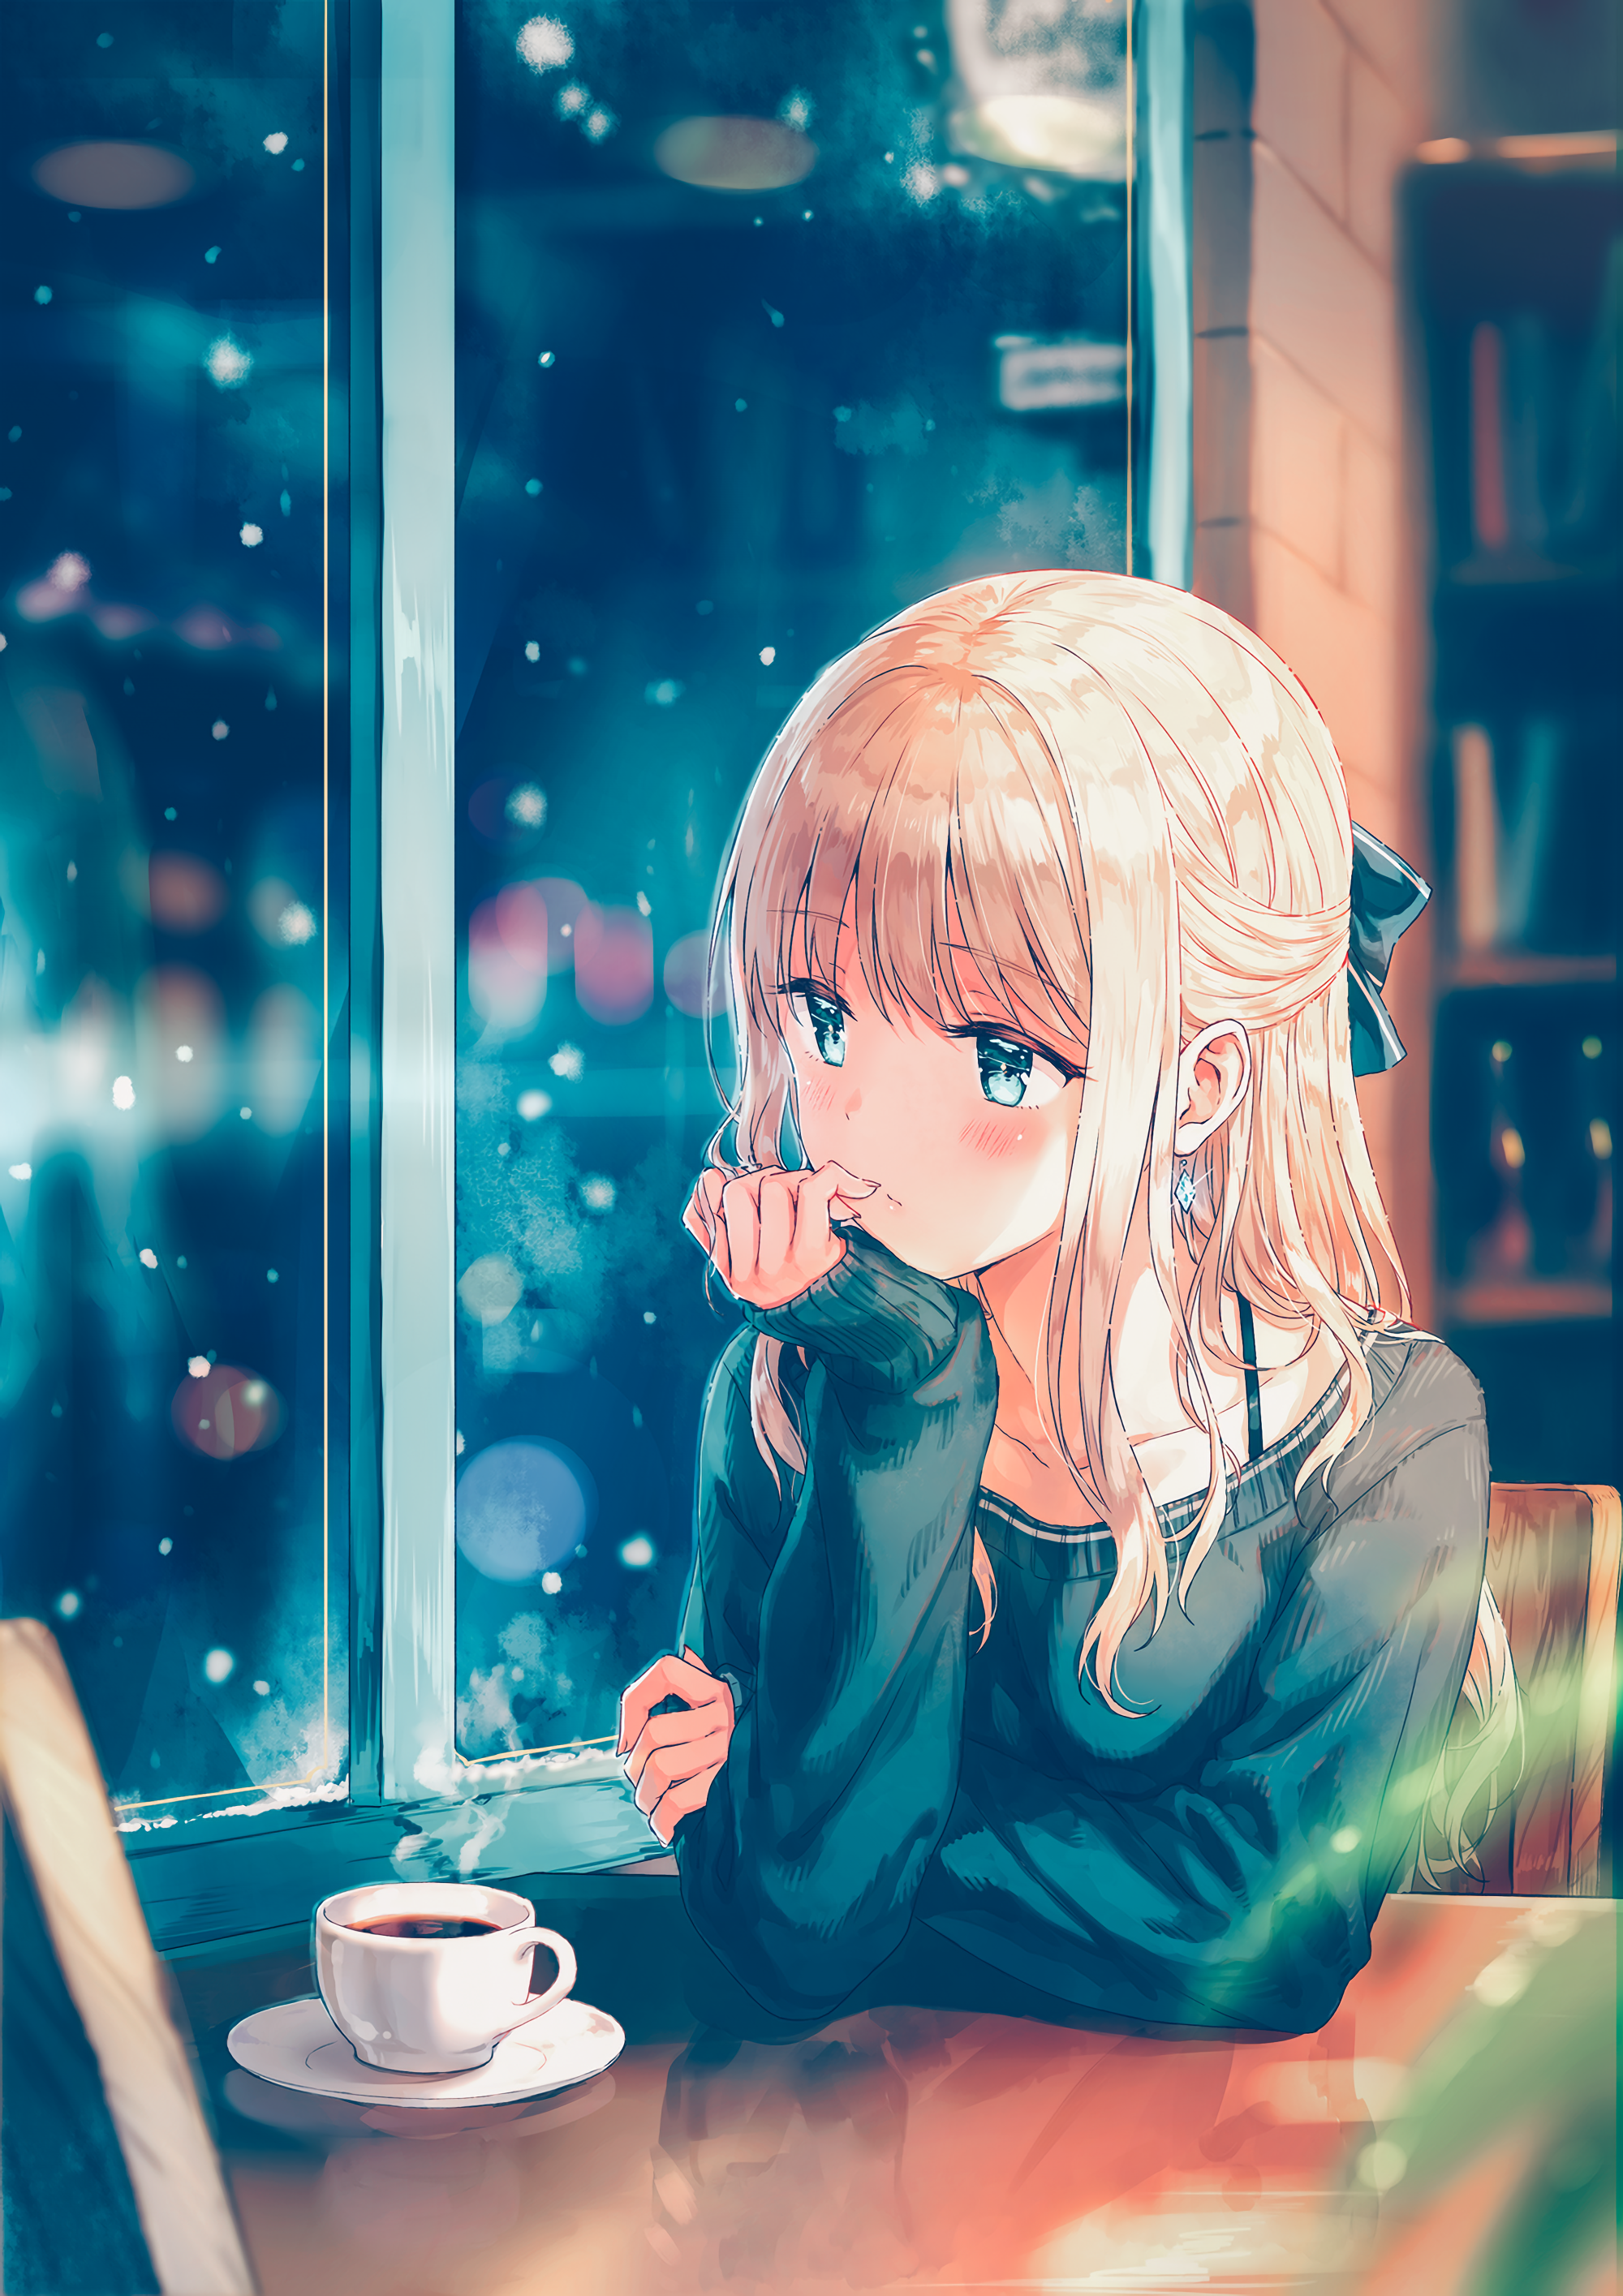 Anime Girl Art by Hiten